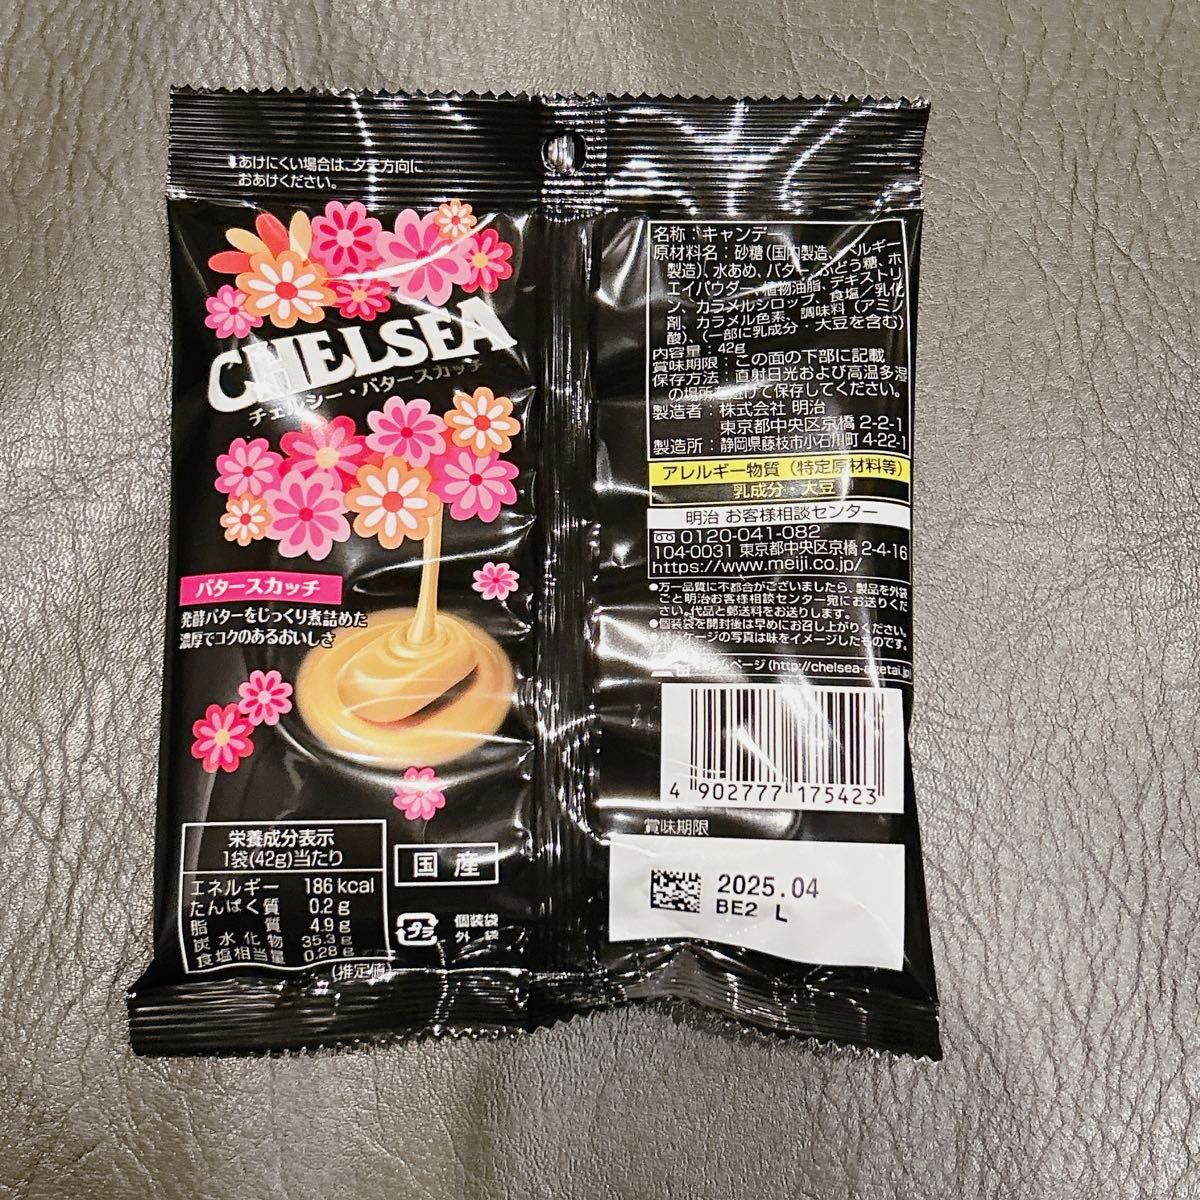 【即日発送】明治 チェルシー バタースカッチ 42g×6袋セット